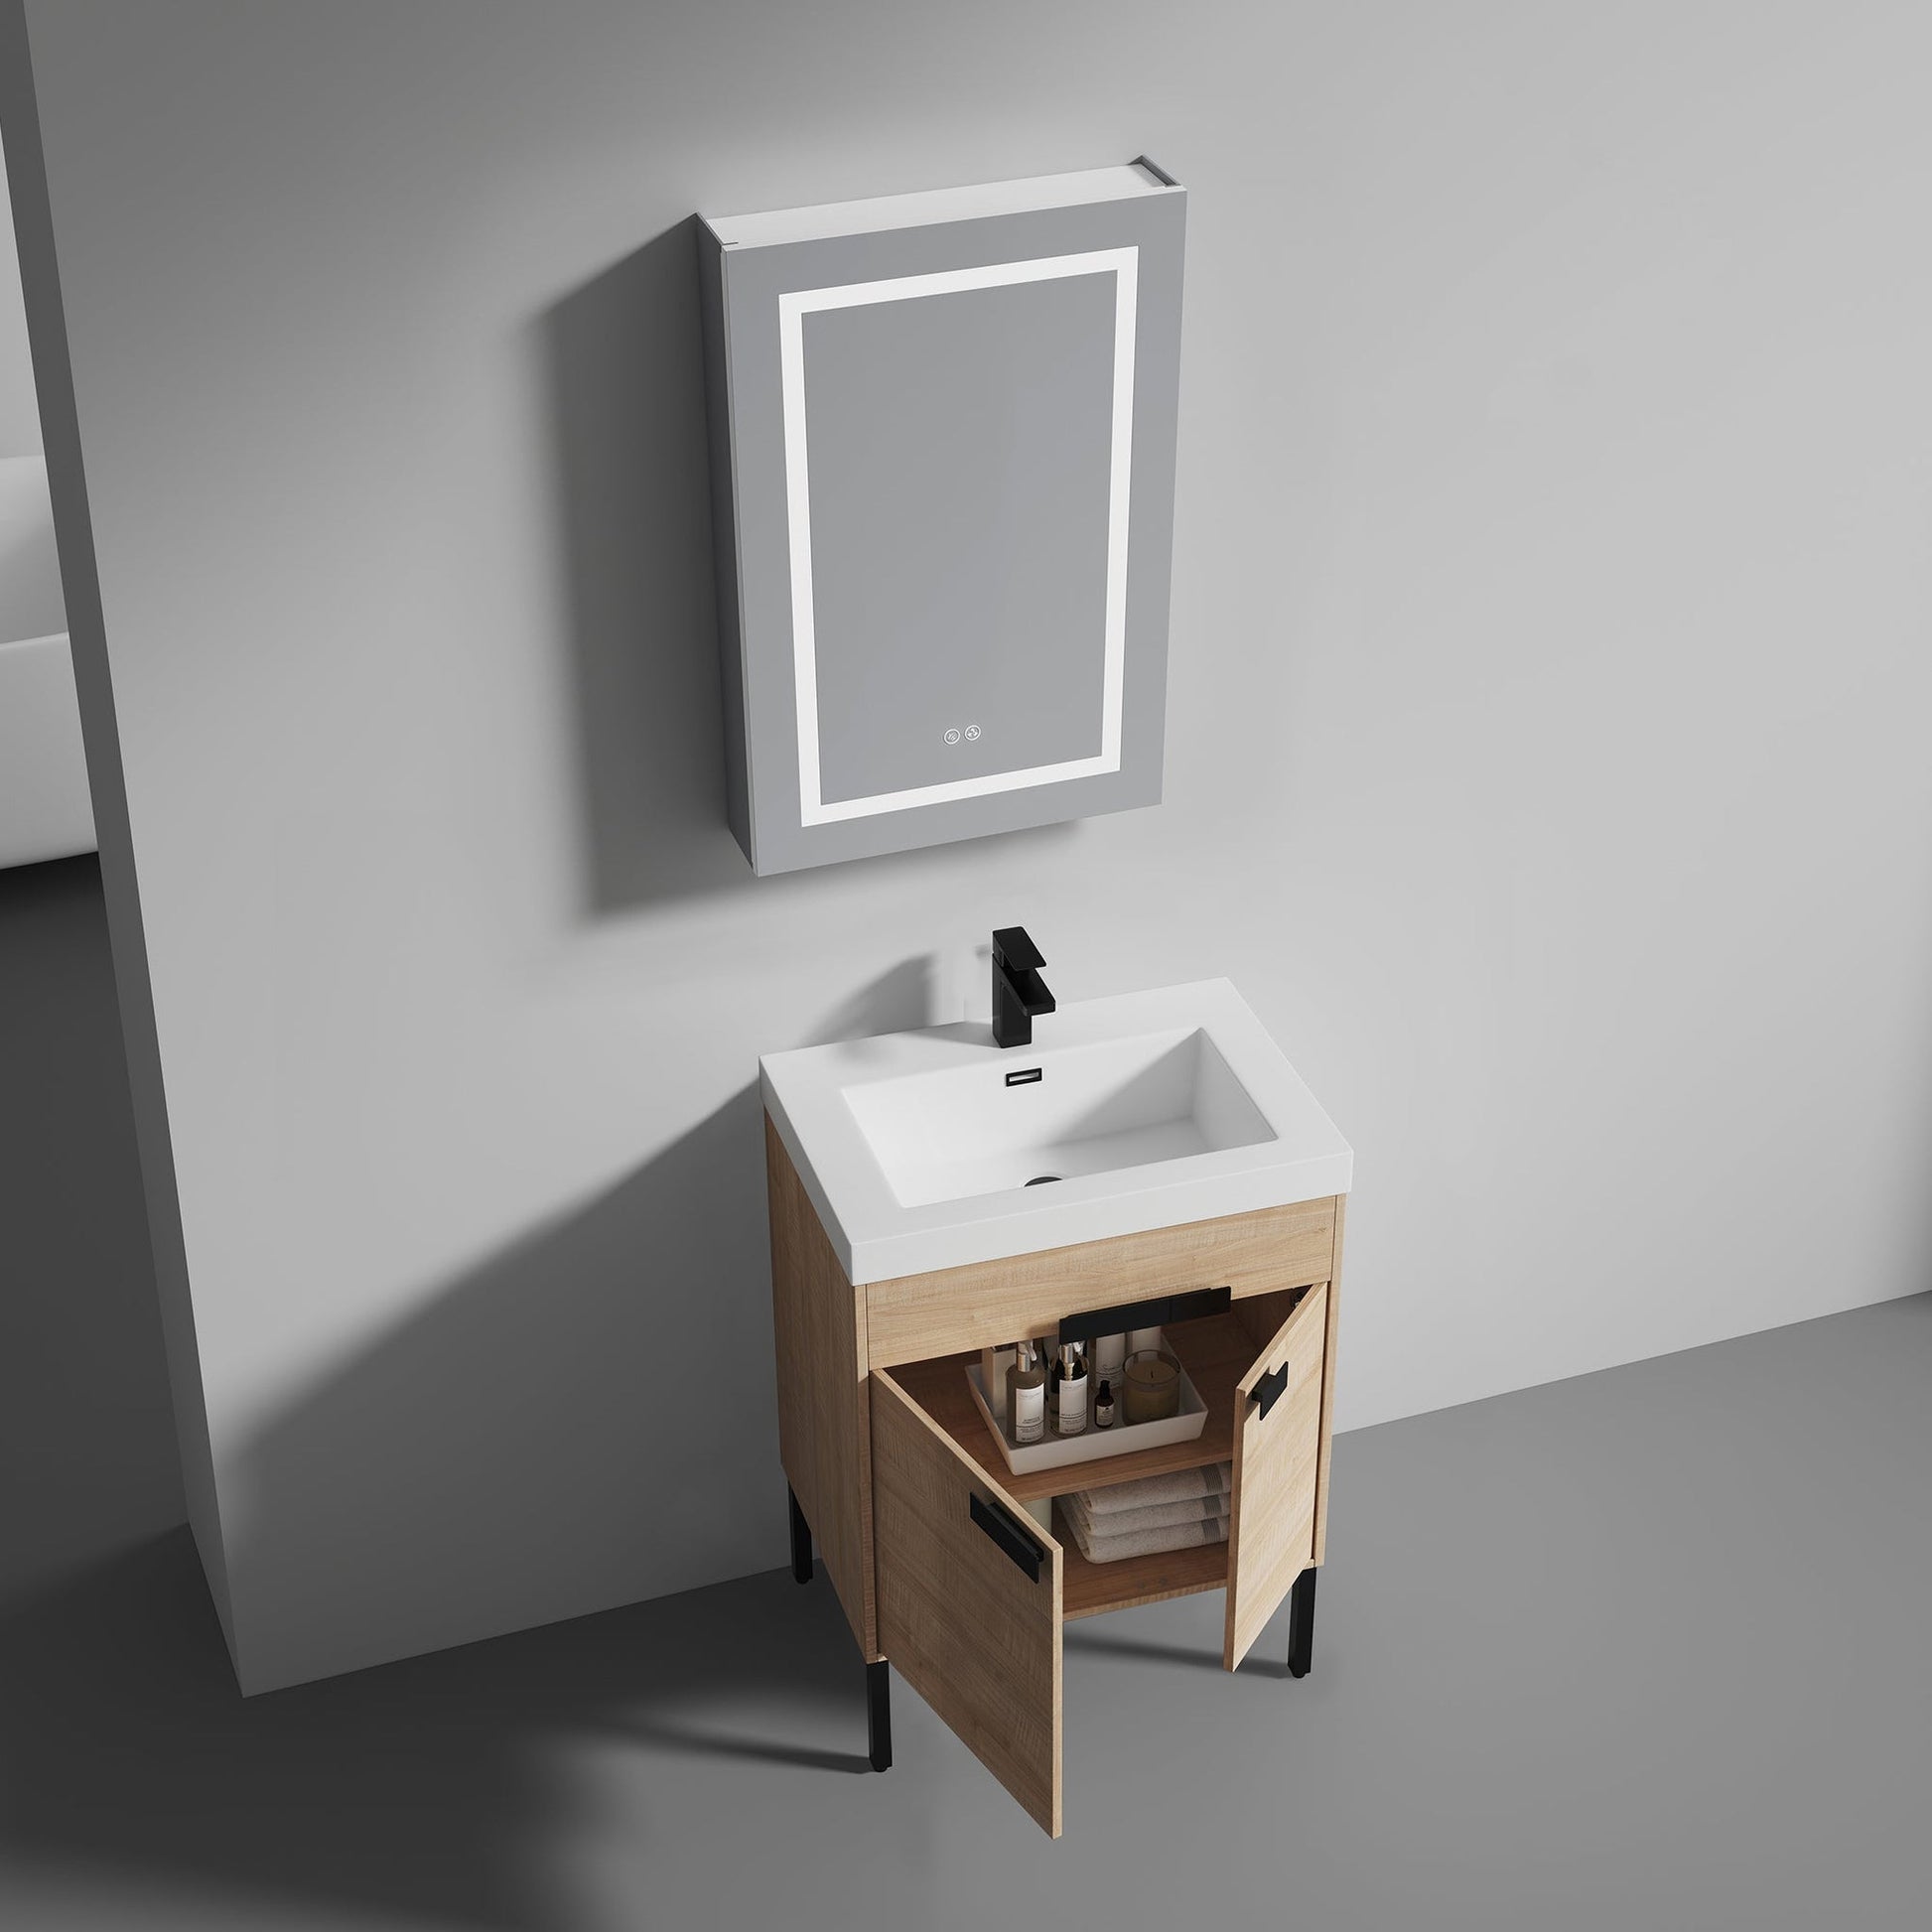 2-Door Freestanding Bathroom Cabinet with Drawer and Adjustable